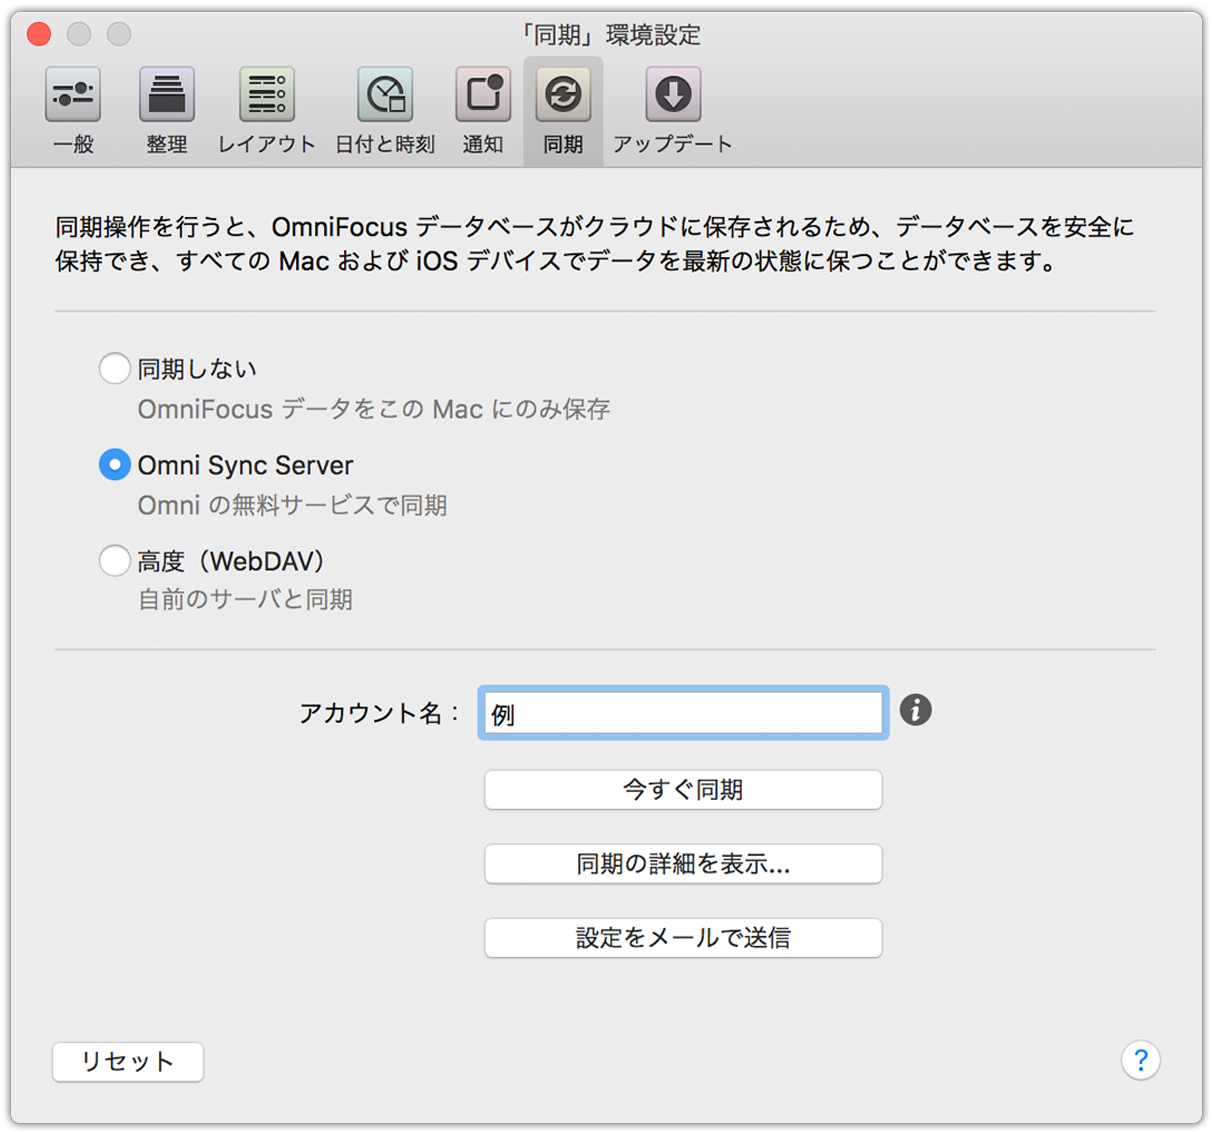 OmniFocus 2 for Mac の同期環境設定